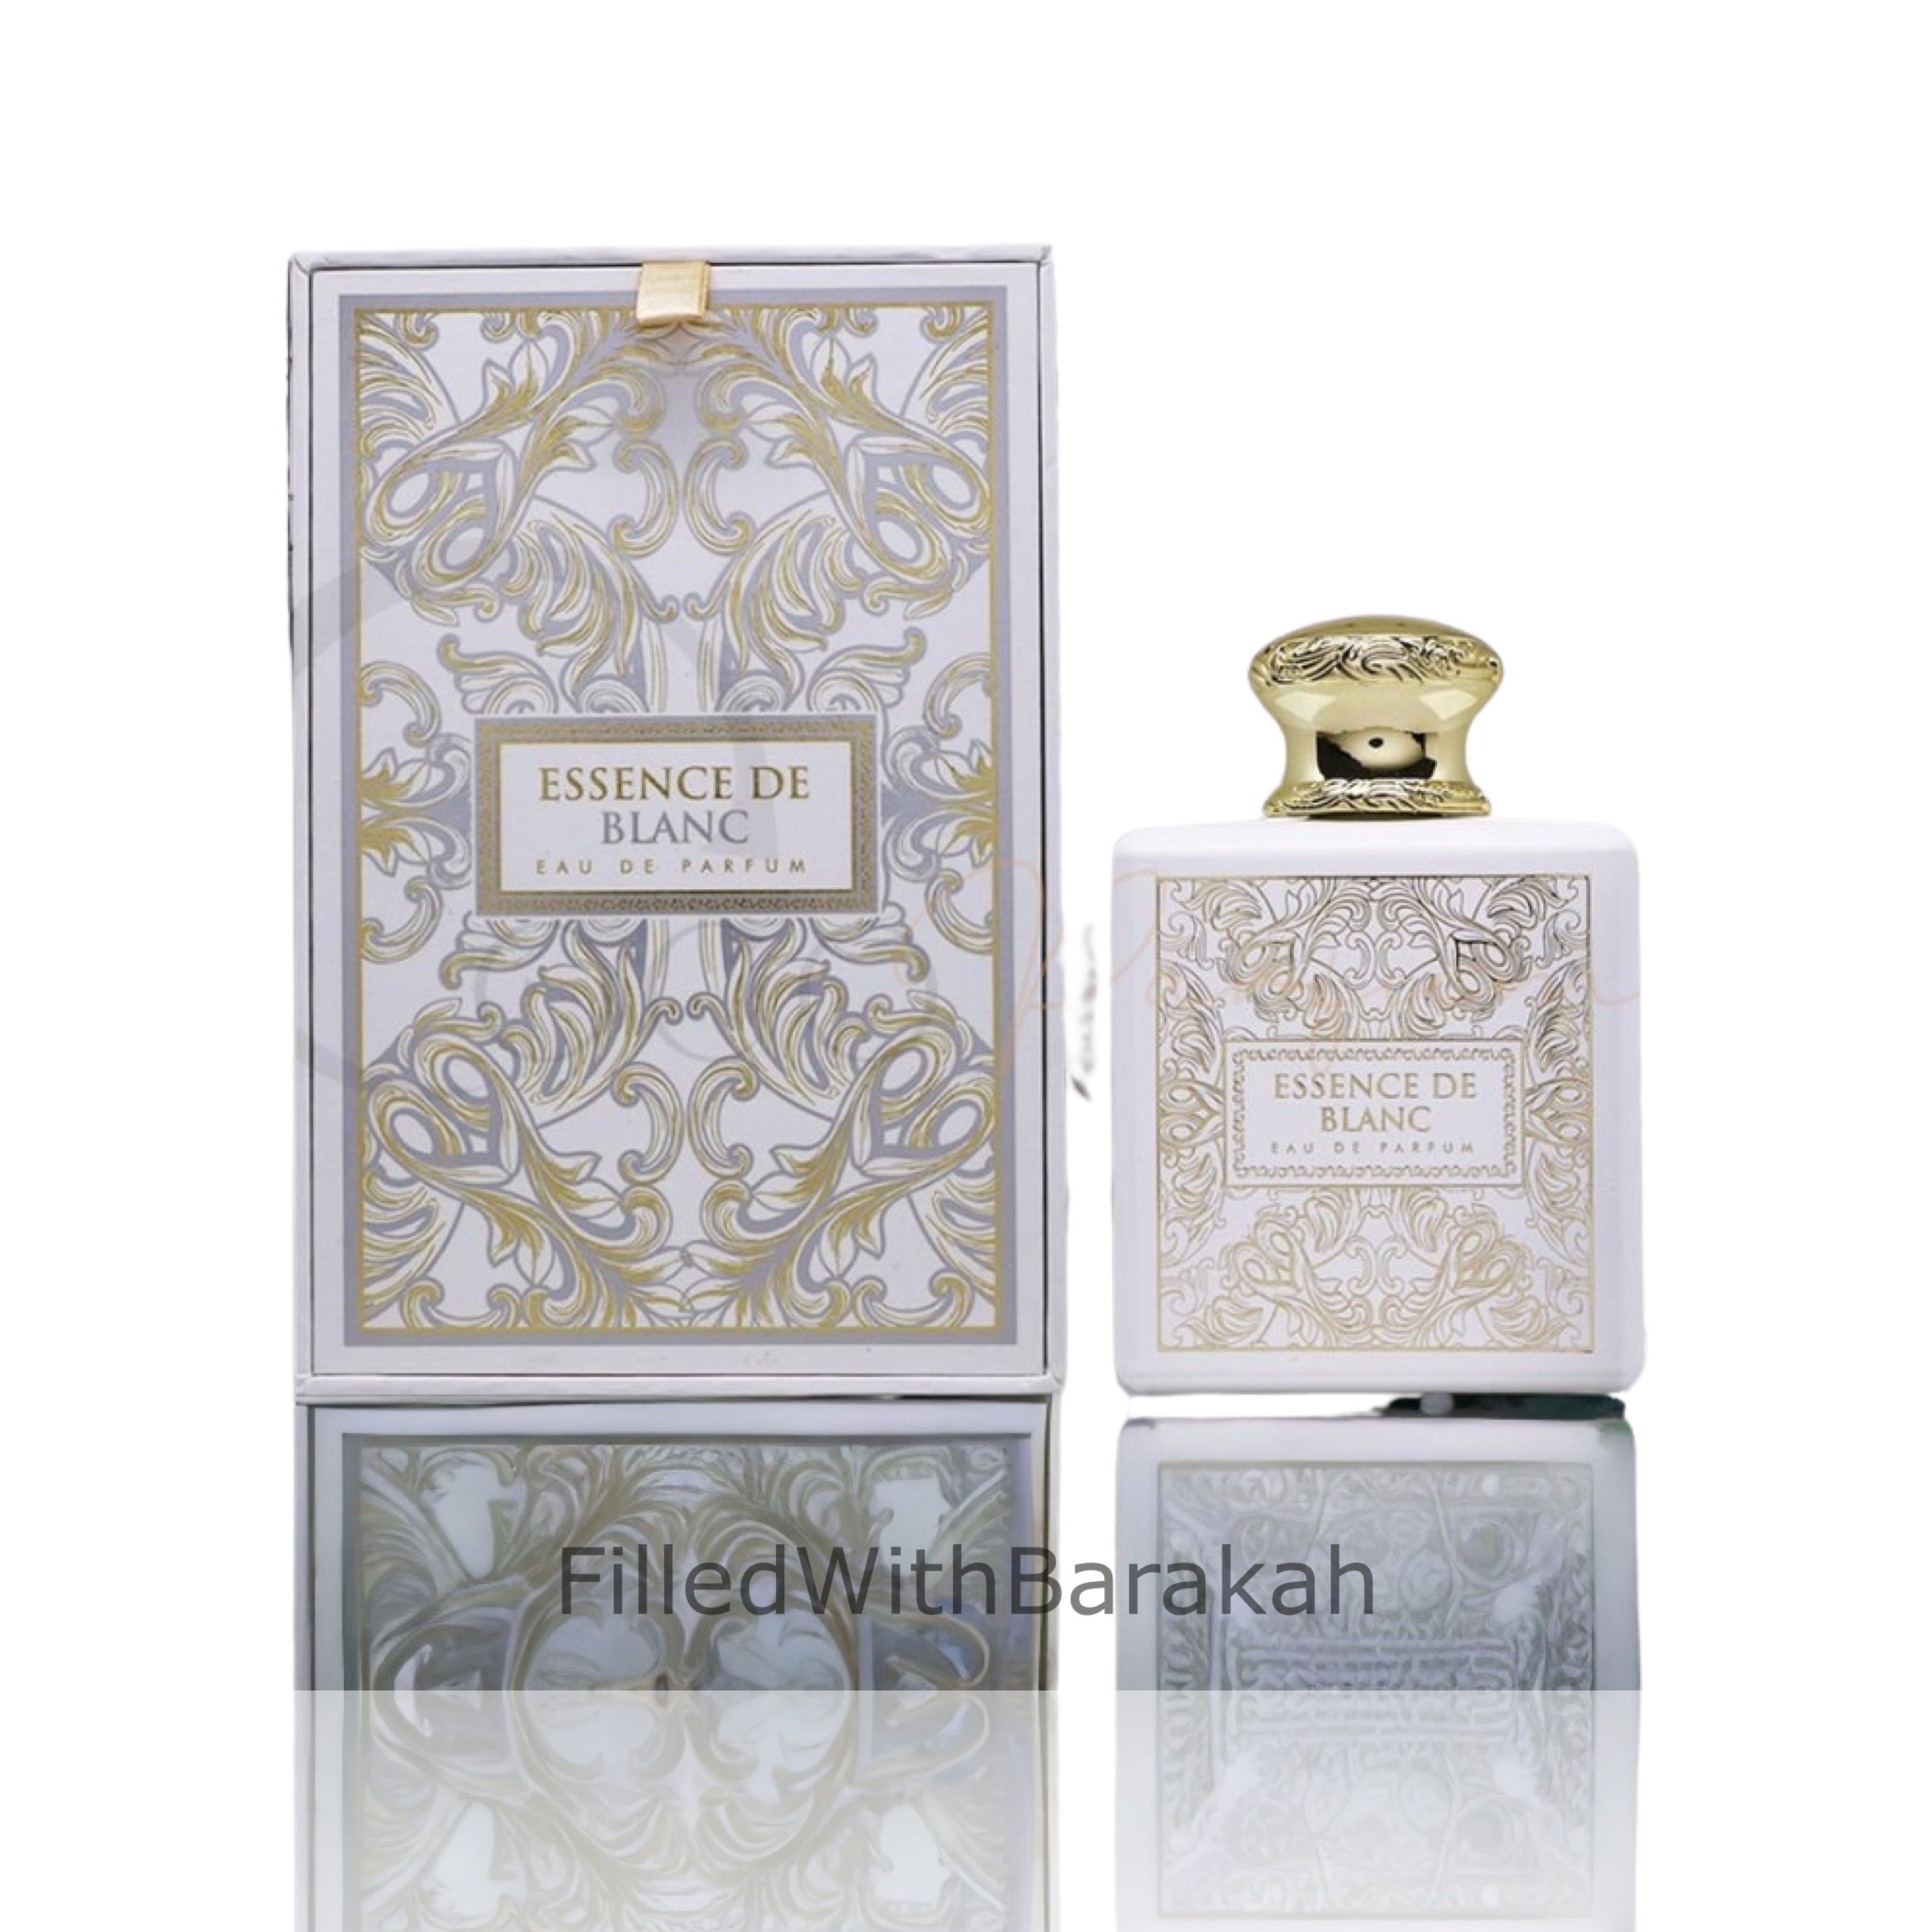 Jacques Yves Champ de Rose Eau de Parfum 100ml For Women -Best designer  perfumes online sales in Nigeria